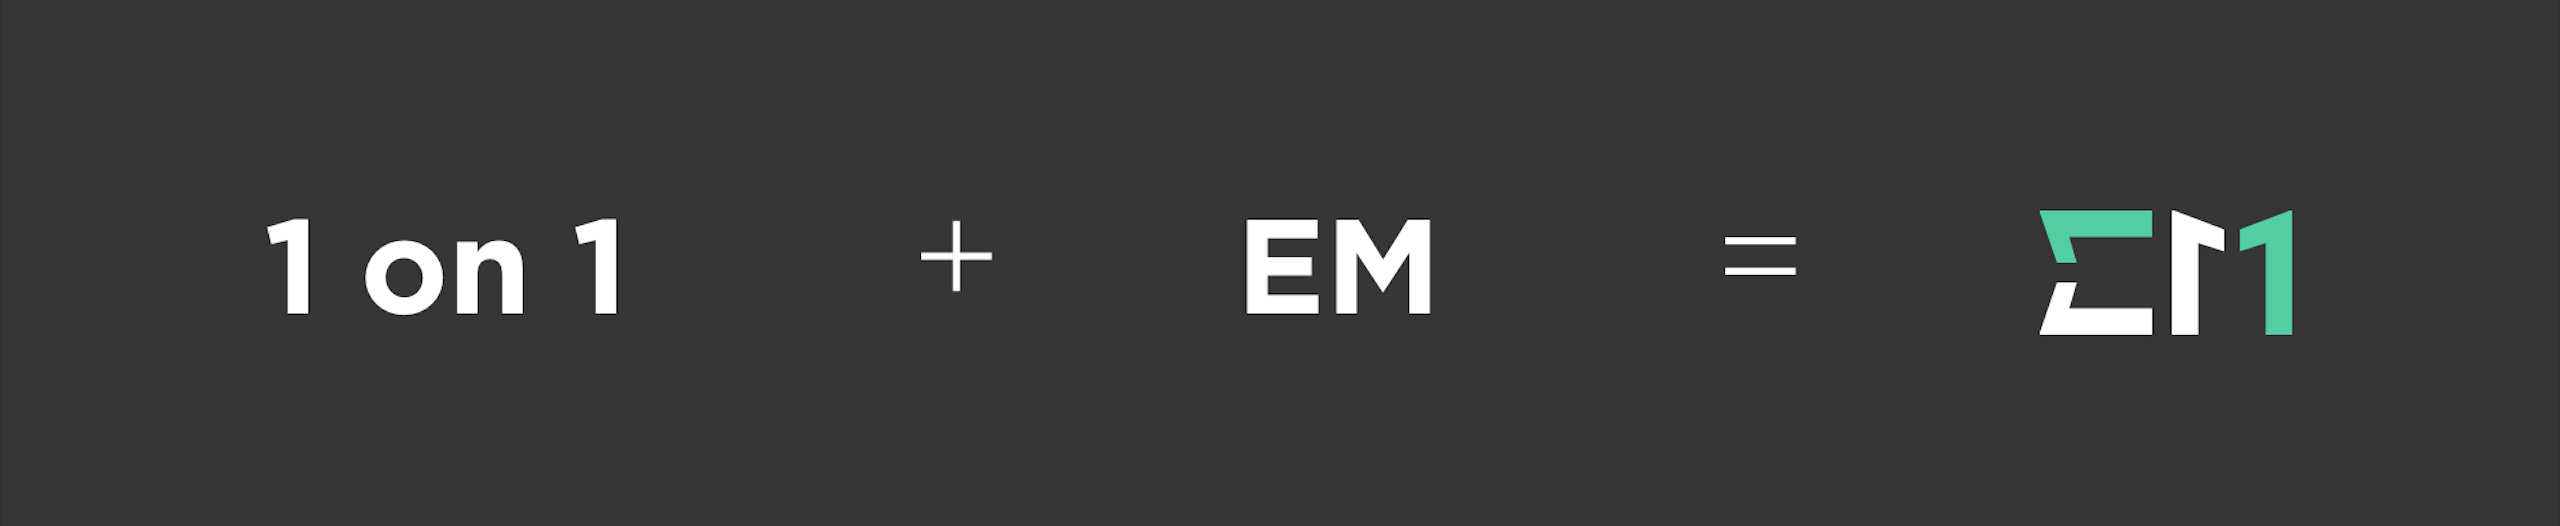 EM Logo Banner